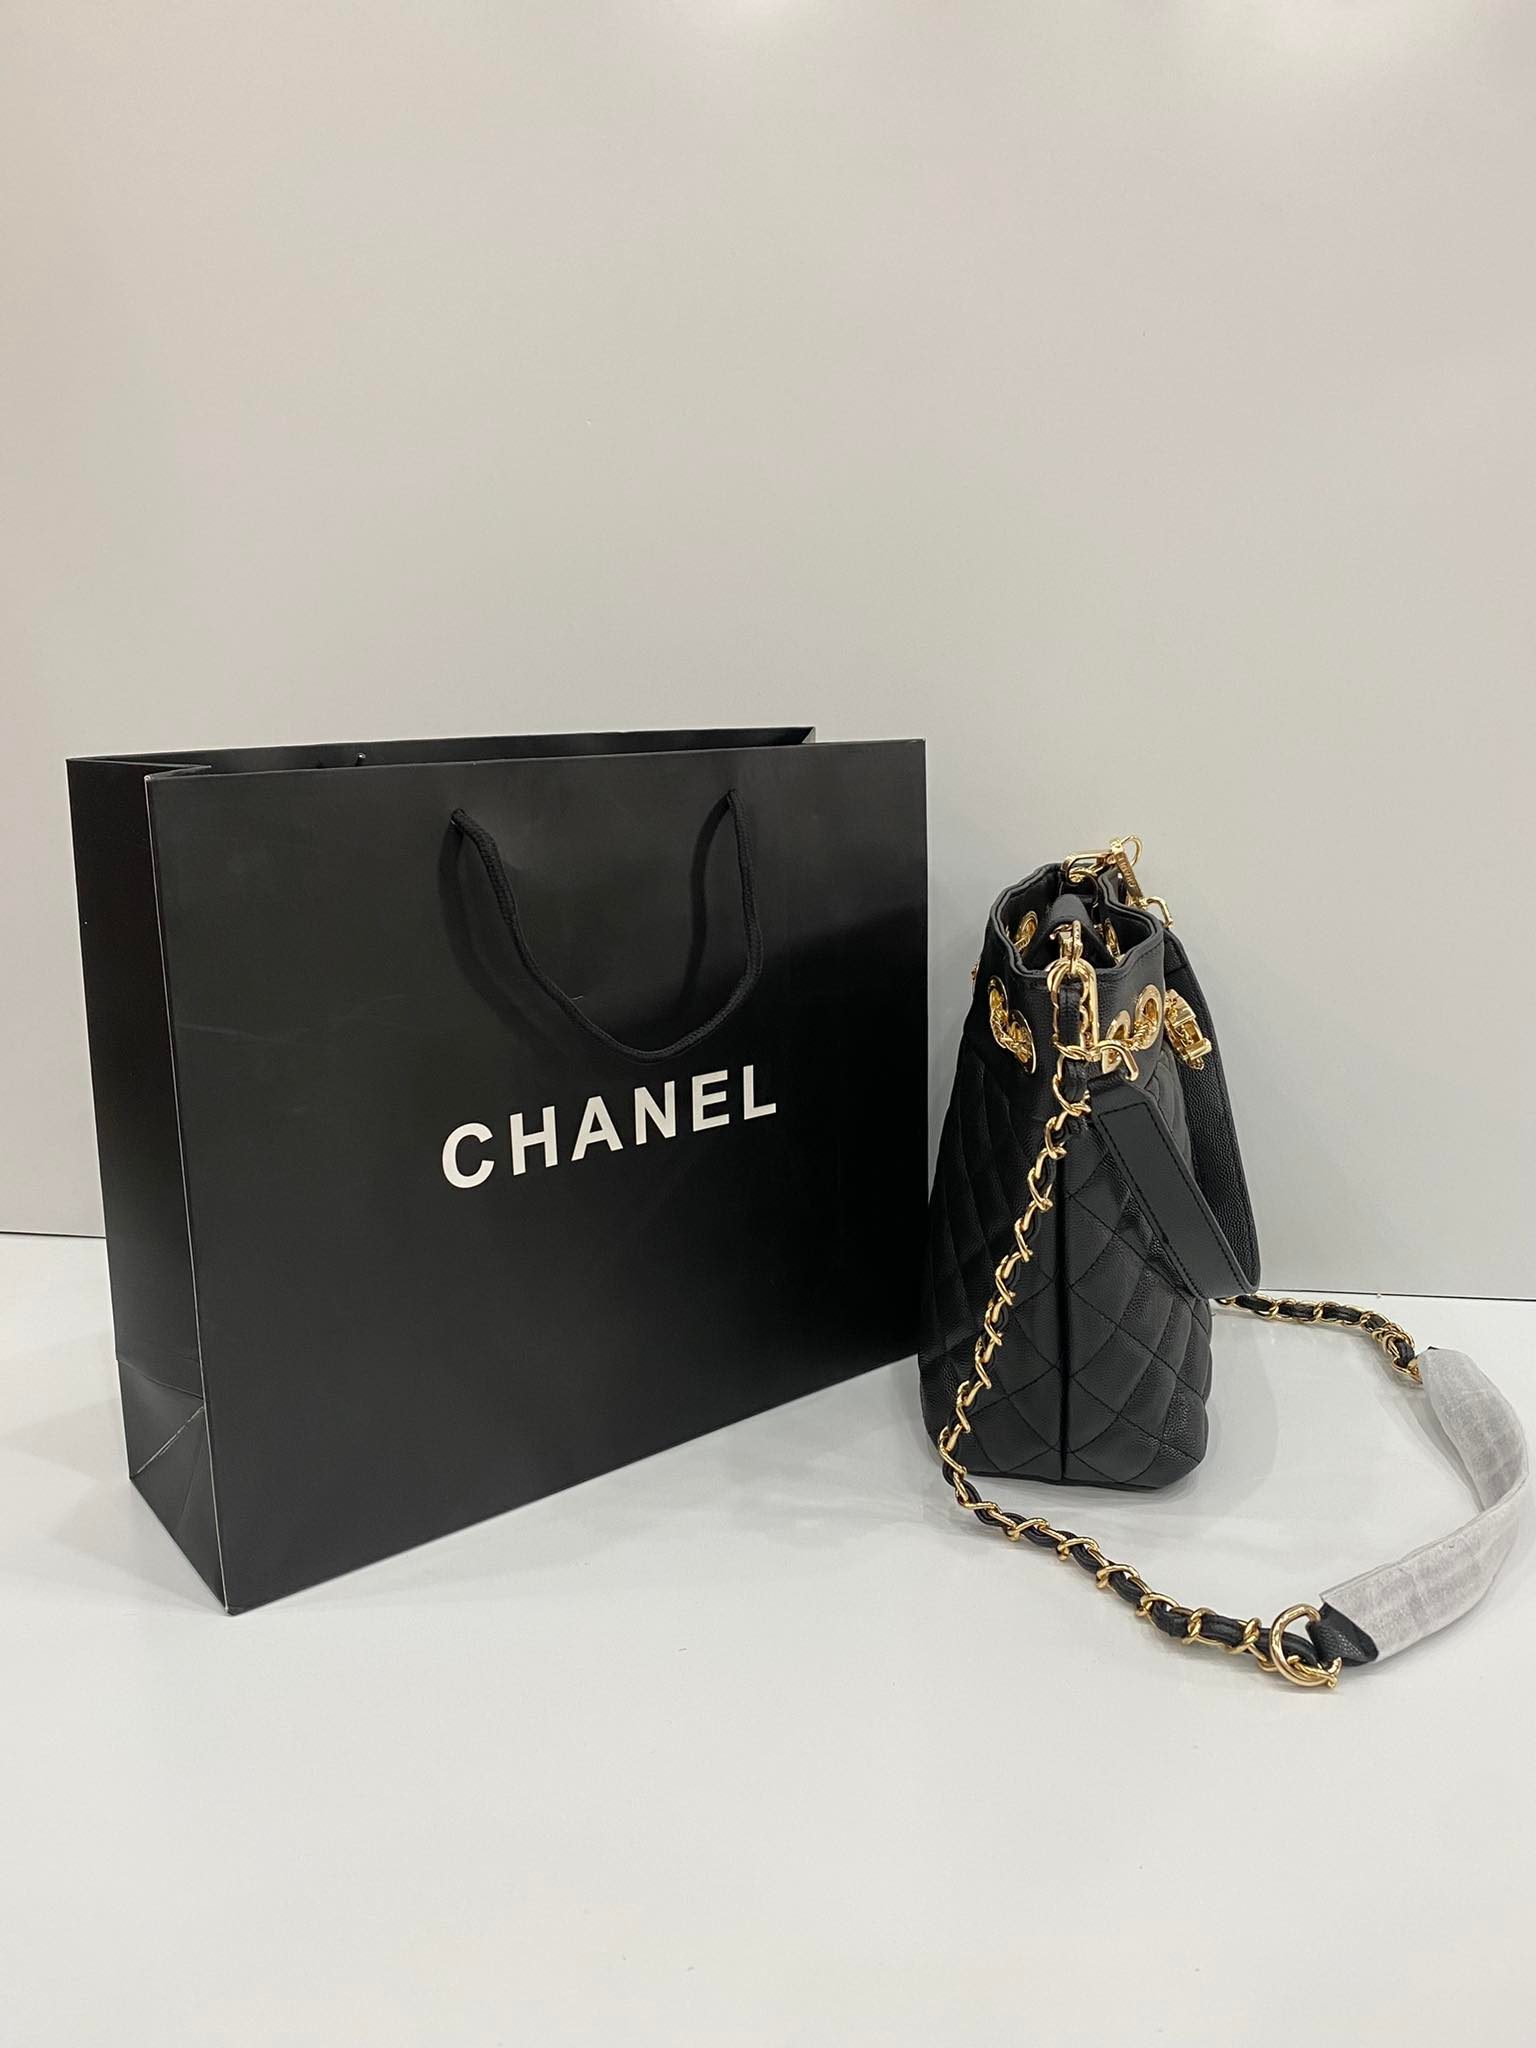 Chanel ngừng bán túi xách cho người Nga muốn đem về nước  Mekong ASEAN